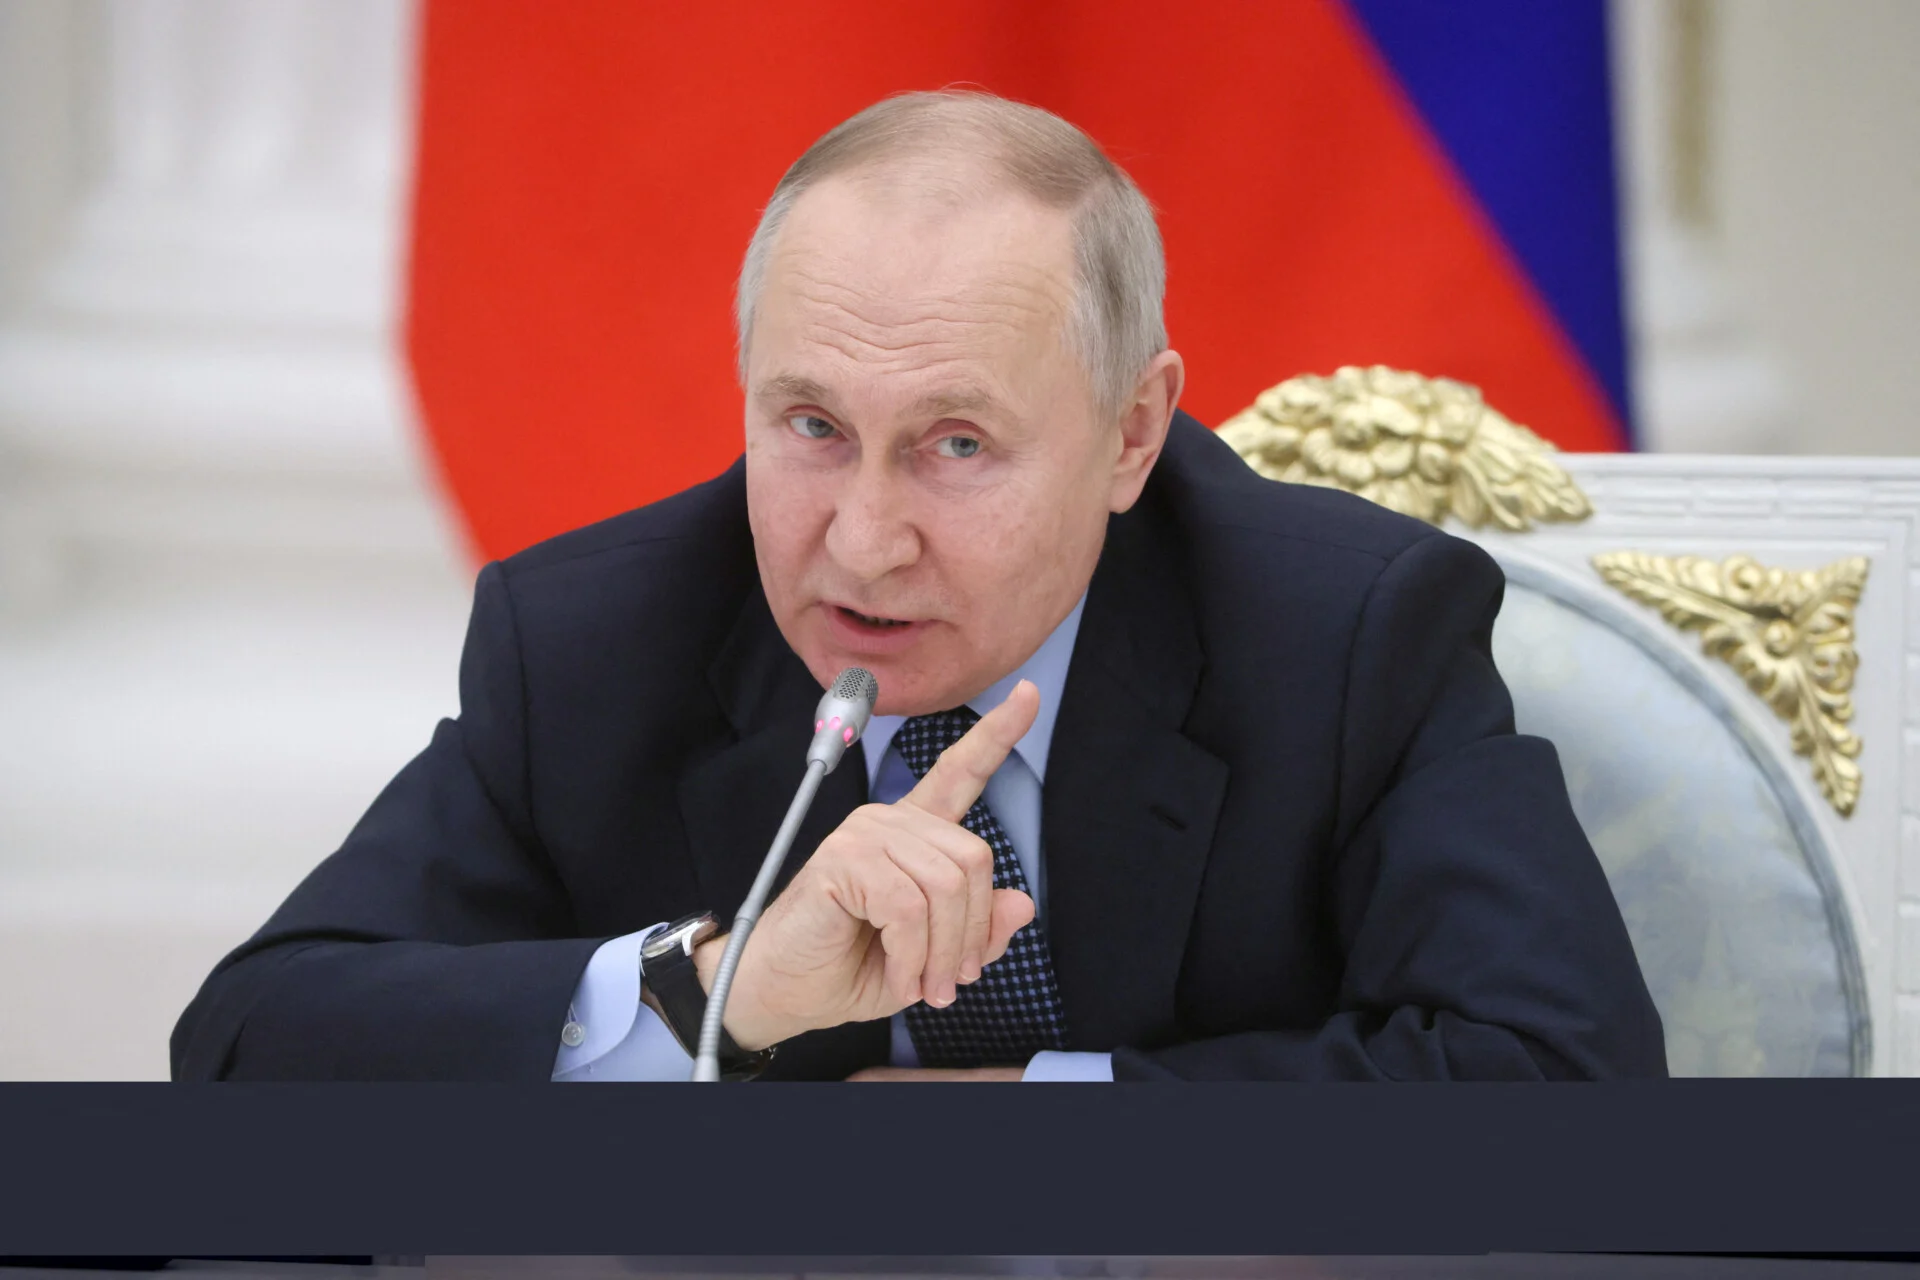 Β.Πούτιν μαινόμενος στο διάγγελμά του κατά της Δύσης μετά τι αποτυχίες των ρωσικών στρατευμάτων